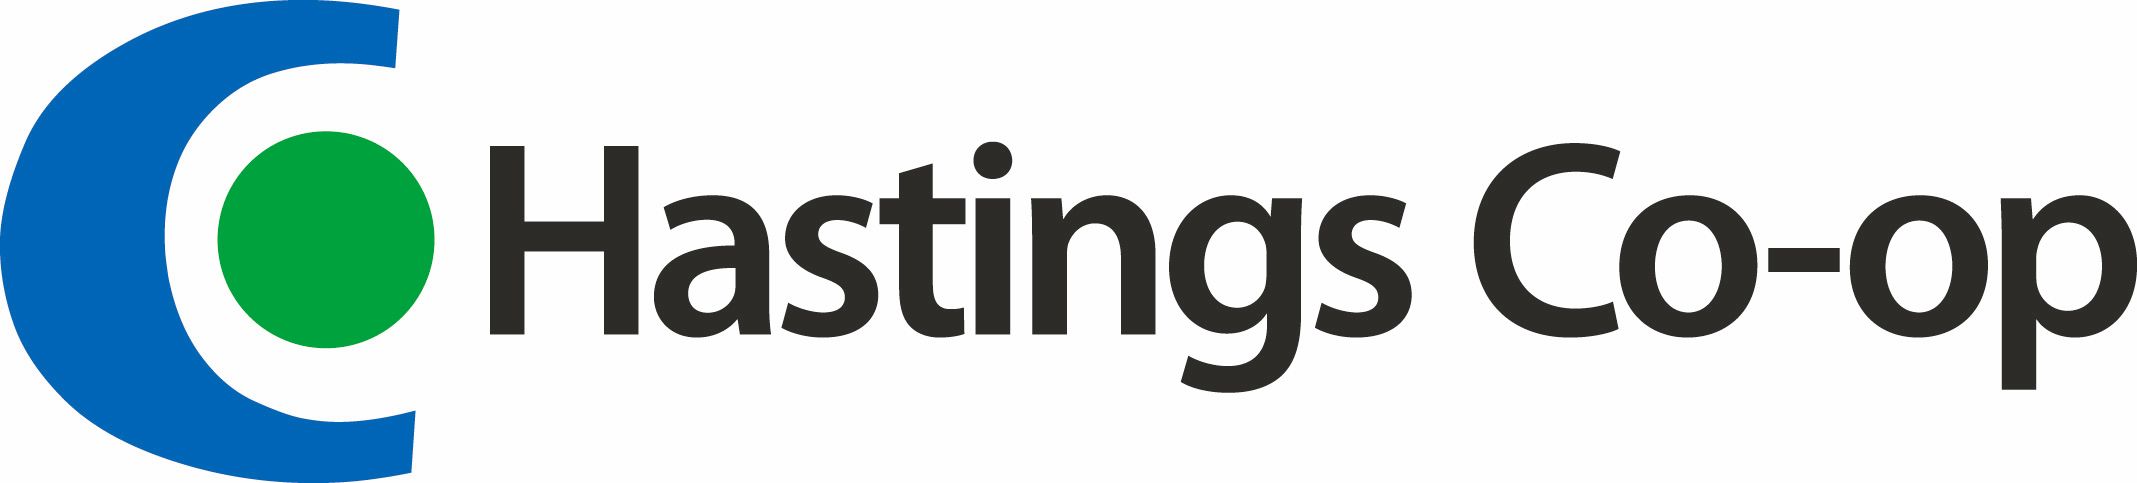 Hastings-Co-op_primary-logo